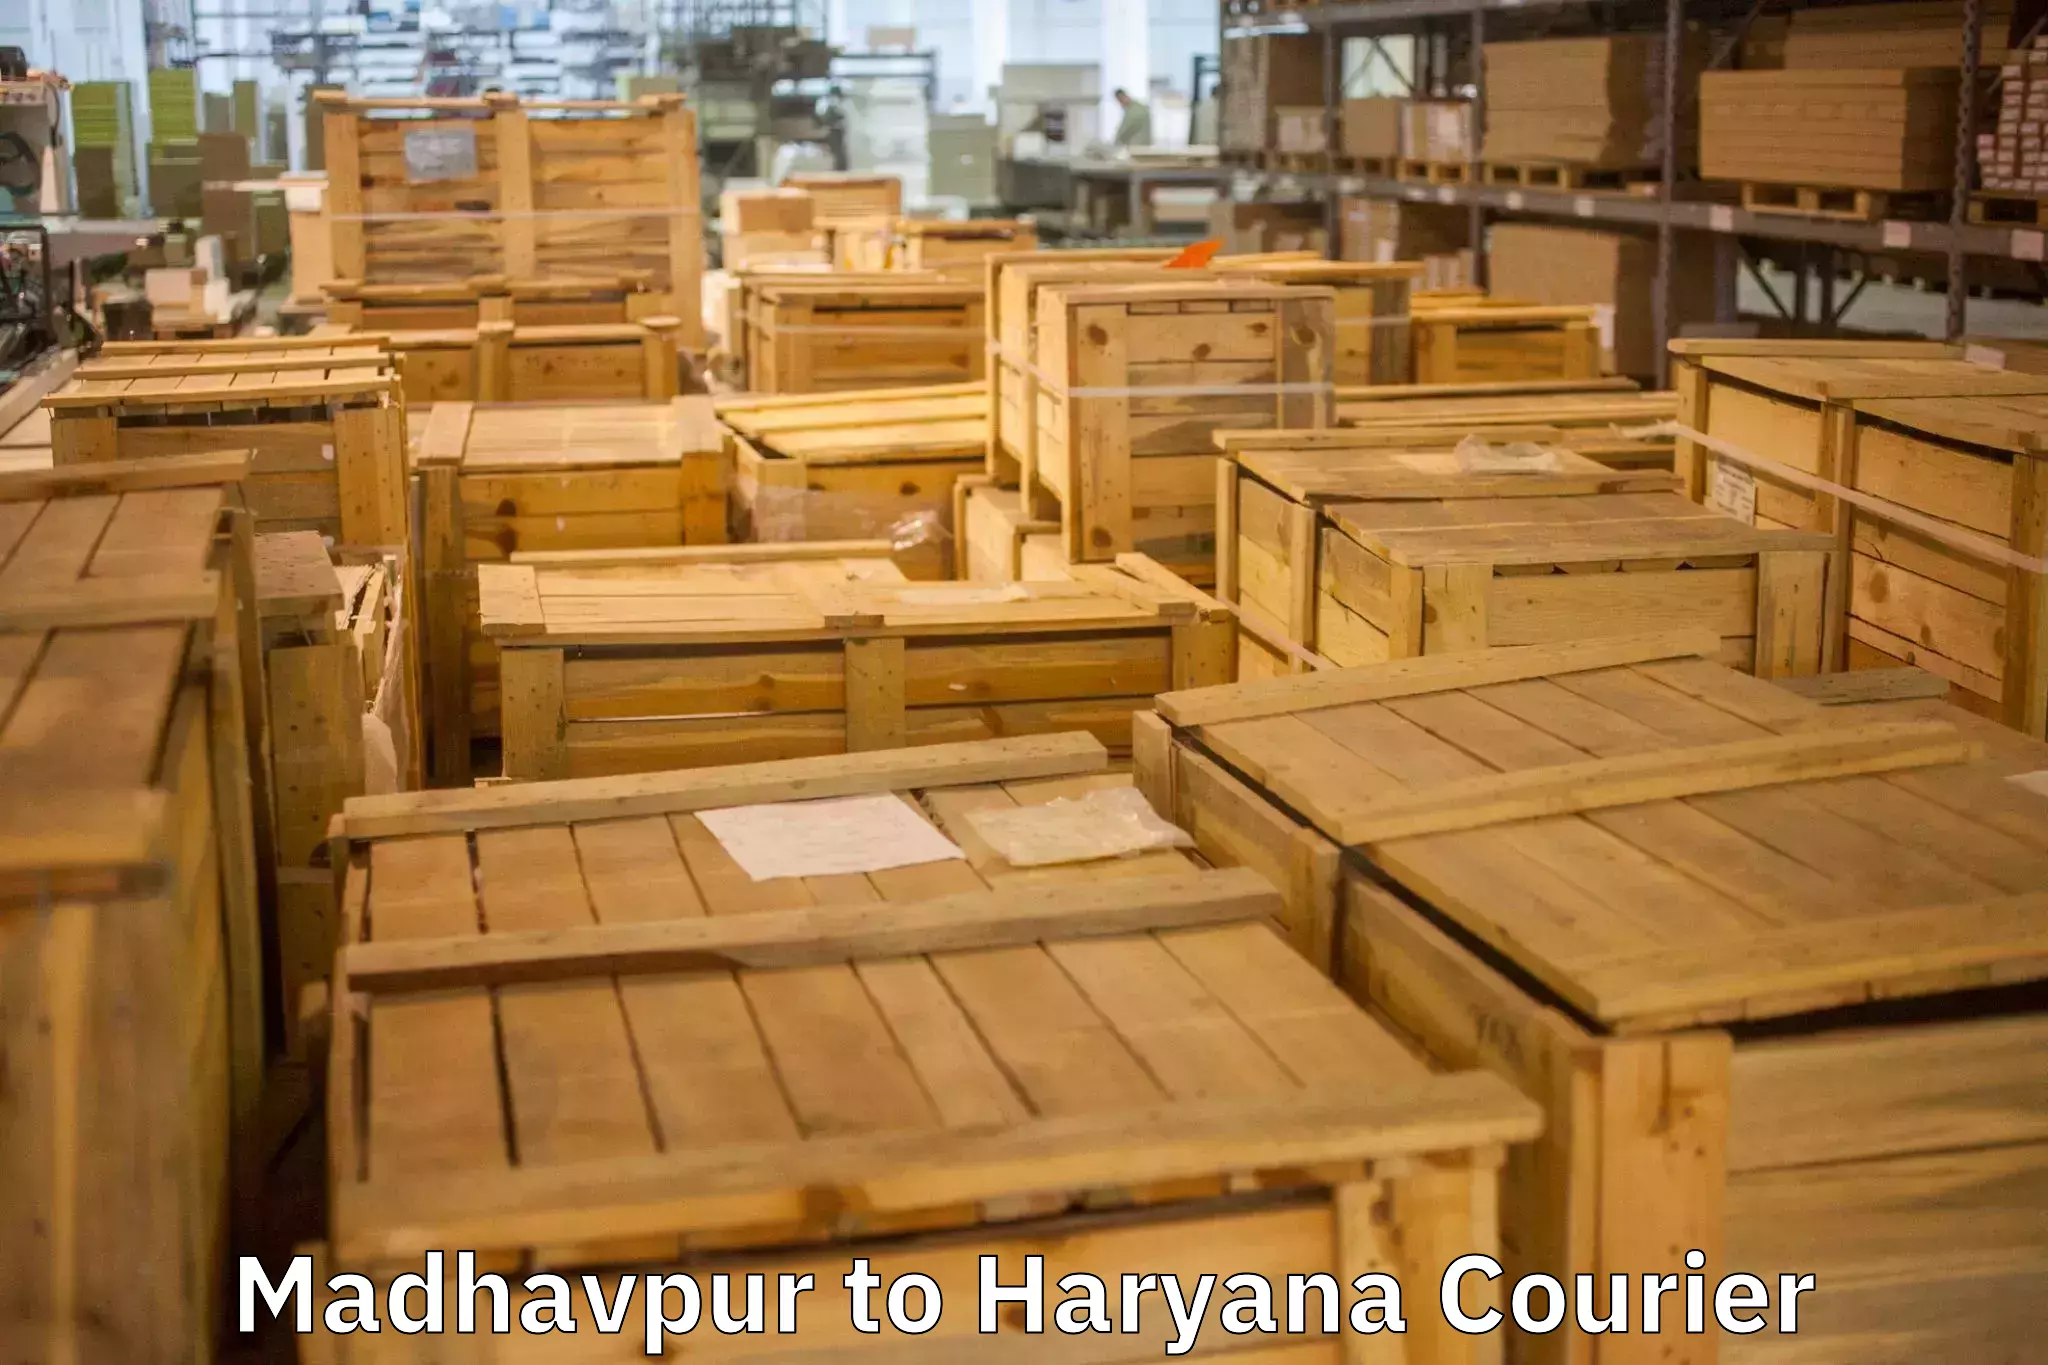 Furniture moving experts Madhavpur to Narwana